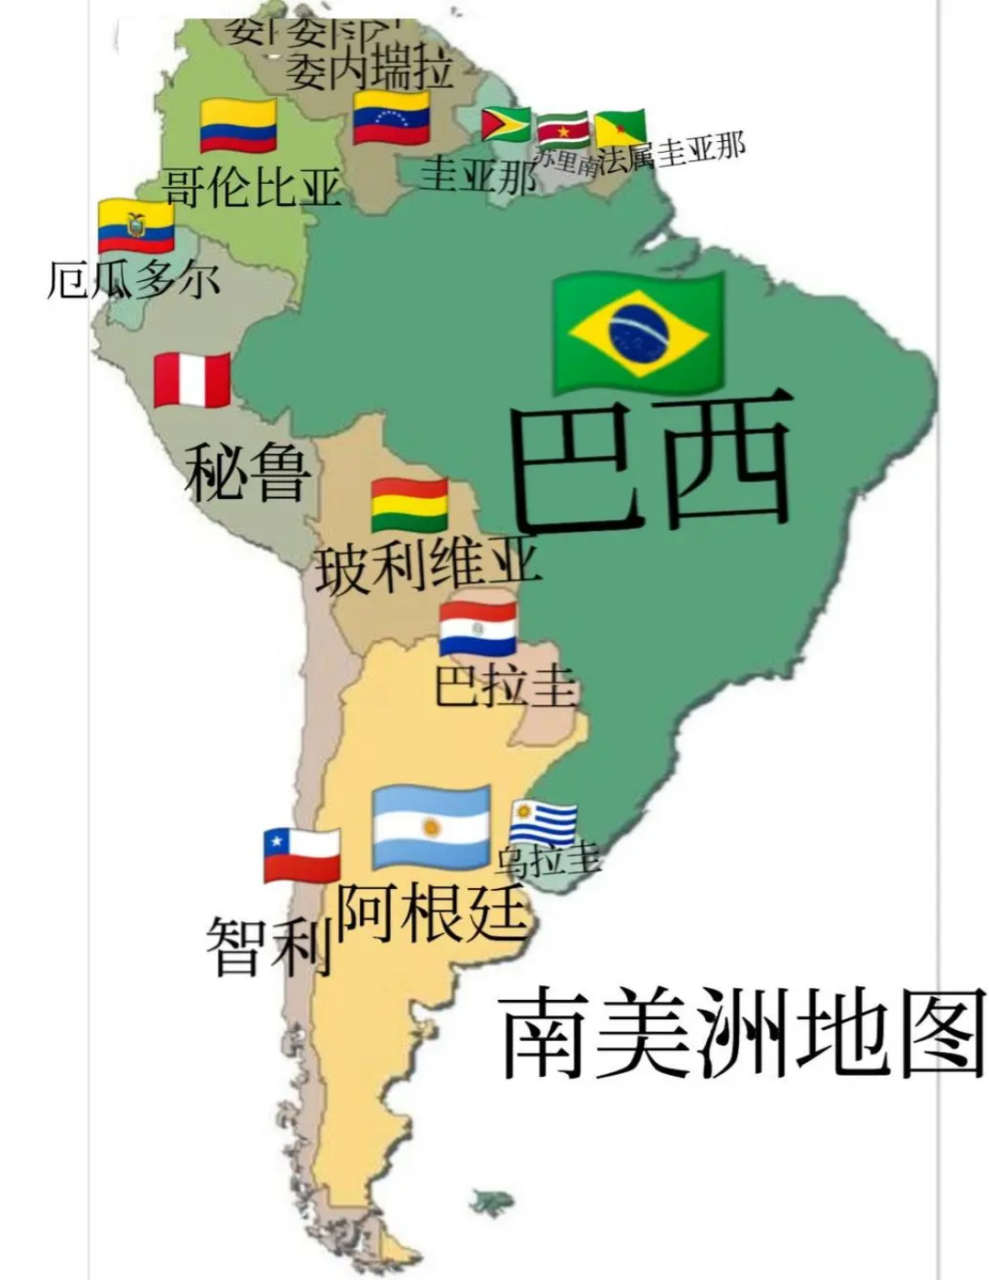 南美洲有几个国家名字带有圭字,如乌拉圭,巴拉圭,圭亚那,法属圭亚那